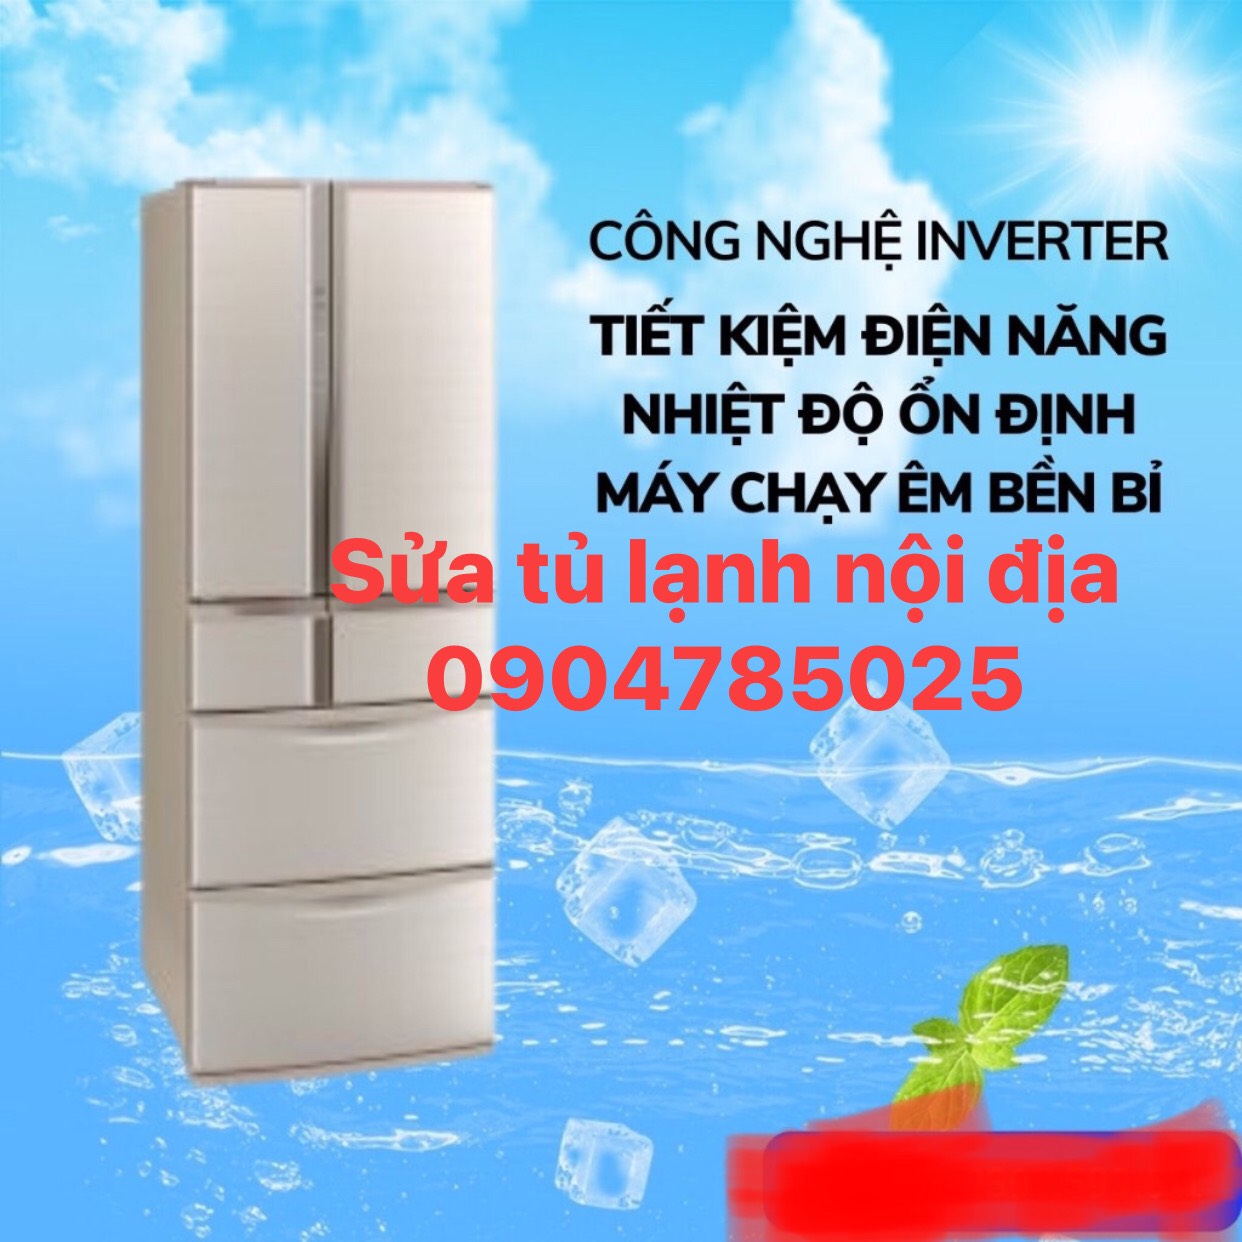 Cửa hàng sửa tủ lạnh nội địa tại nhà Hà Nội 0904785025